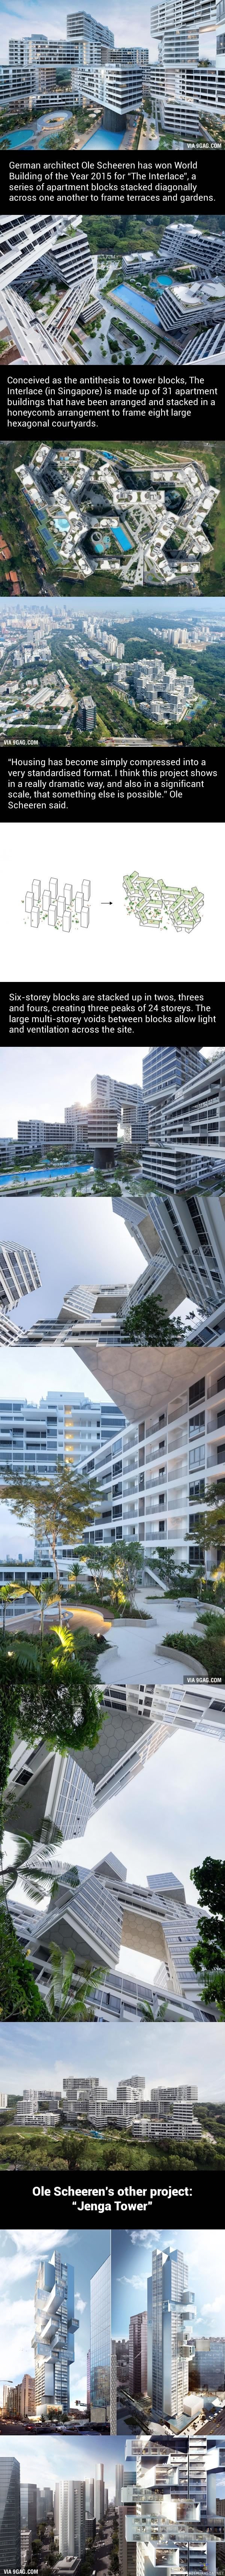 Erikoista arkkitehtuuria - Saksalainen arkkitehti Ole Scheeren on suunnitellut erikoisia kerrostaloja, kuten Singaporessa sijaitsevan lomittain toistensa päälle sijoitettujen kerrostalojen alueen sekä &quot;Jenga tower&quot; pilvenpiirtäjän